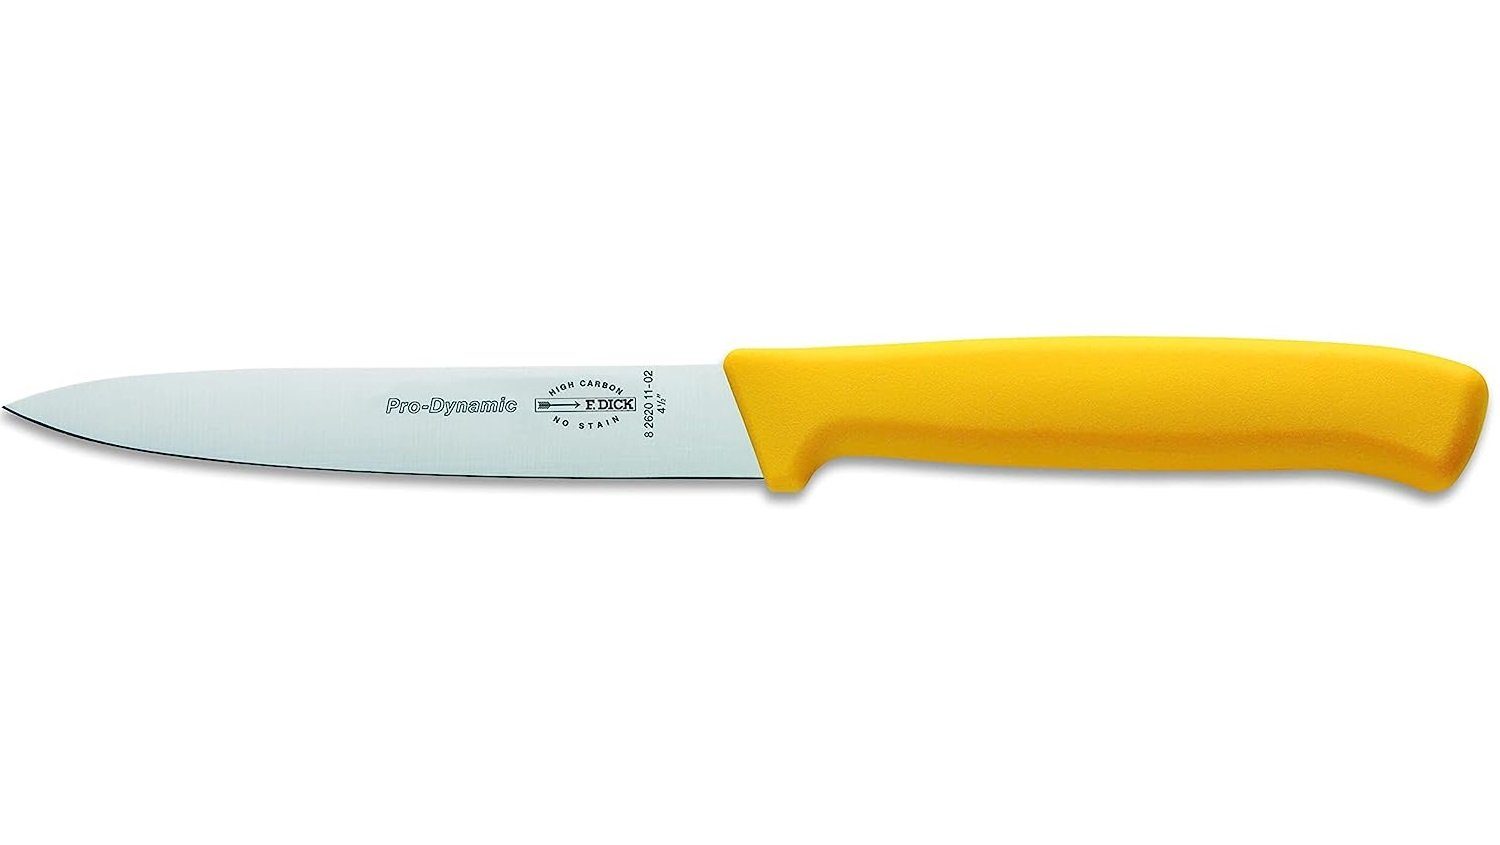 Universalküchenmesser cm F. 11 gelb Küchenmesser DICK kleine F. Kochmesser DICK ProDynamic